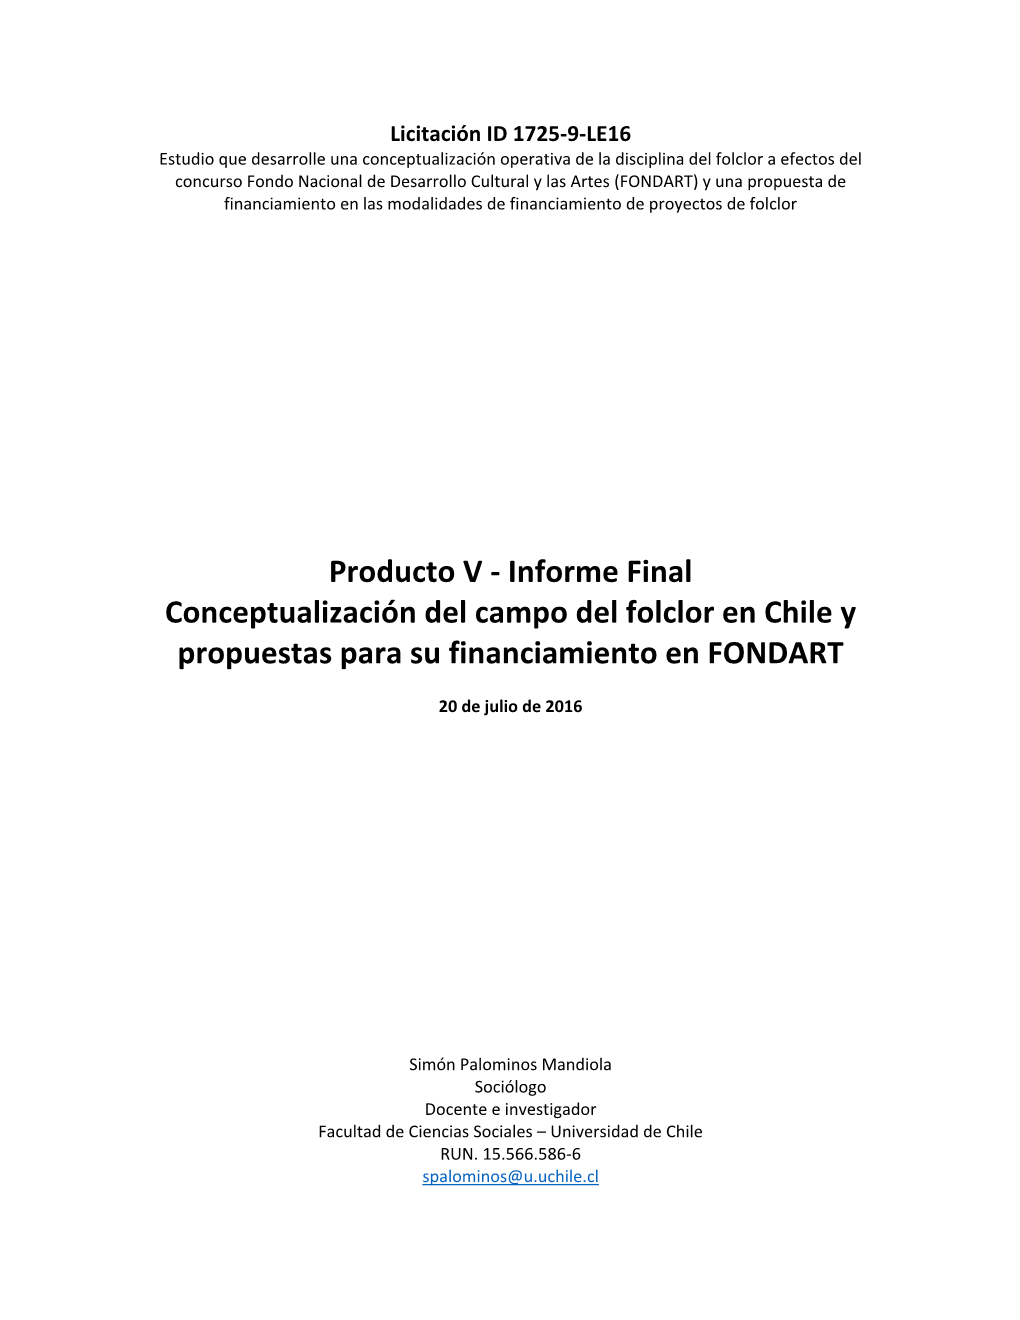 Informe Final Conceptualización Del Campo Del Folclor En Chile Y Propuestas Para Su Financiamiento En FONDART